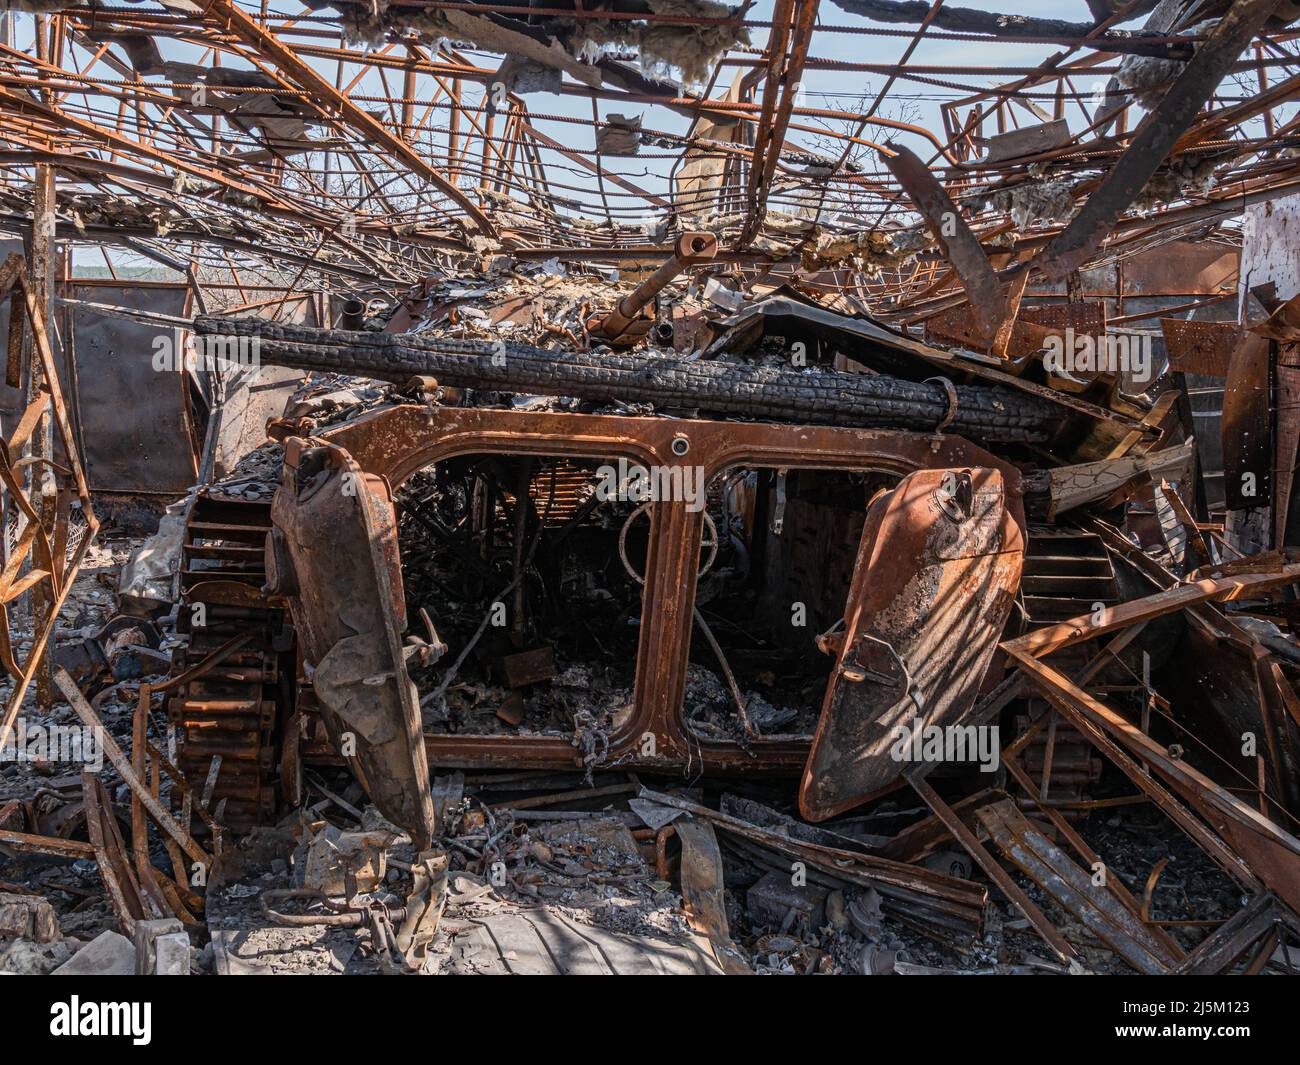 Borodyanka, Ucraina - Aprile 2022: Bruciato e distrutto attrezzature militari per le strade del villaggio a seguito di un attacco da parte degli invasori russi. Dettagli di un veicolo da combattimento di fanteria russa (BMP). Foto Stock